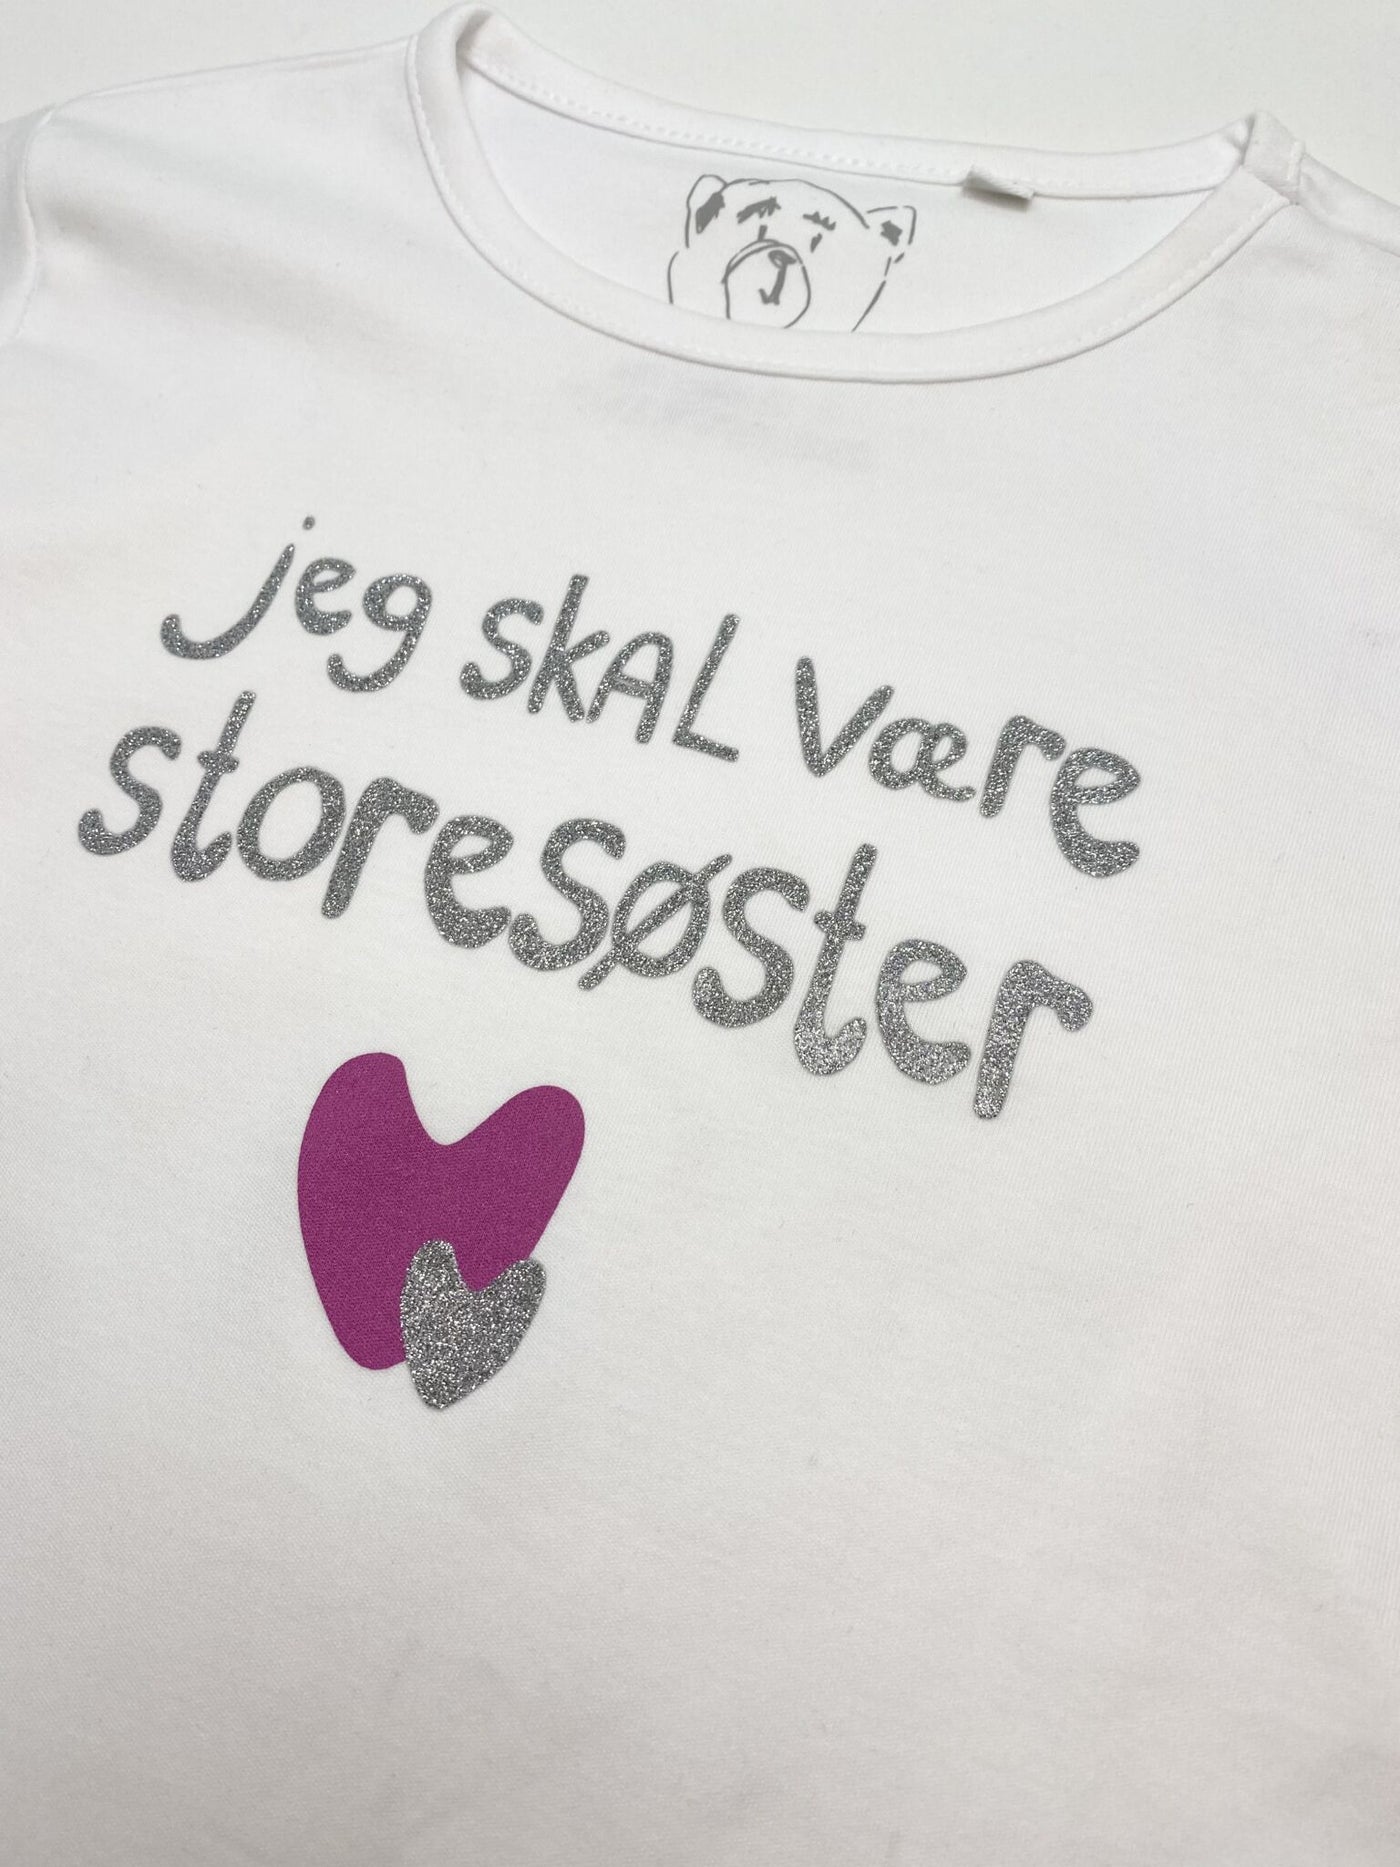 Stærk vind romanforfatter uheldigvis Jeg skal være Storesøster T-Shirt med 2 hjerter i sølv og pink. Køb nu✓